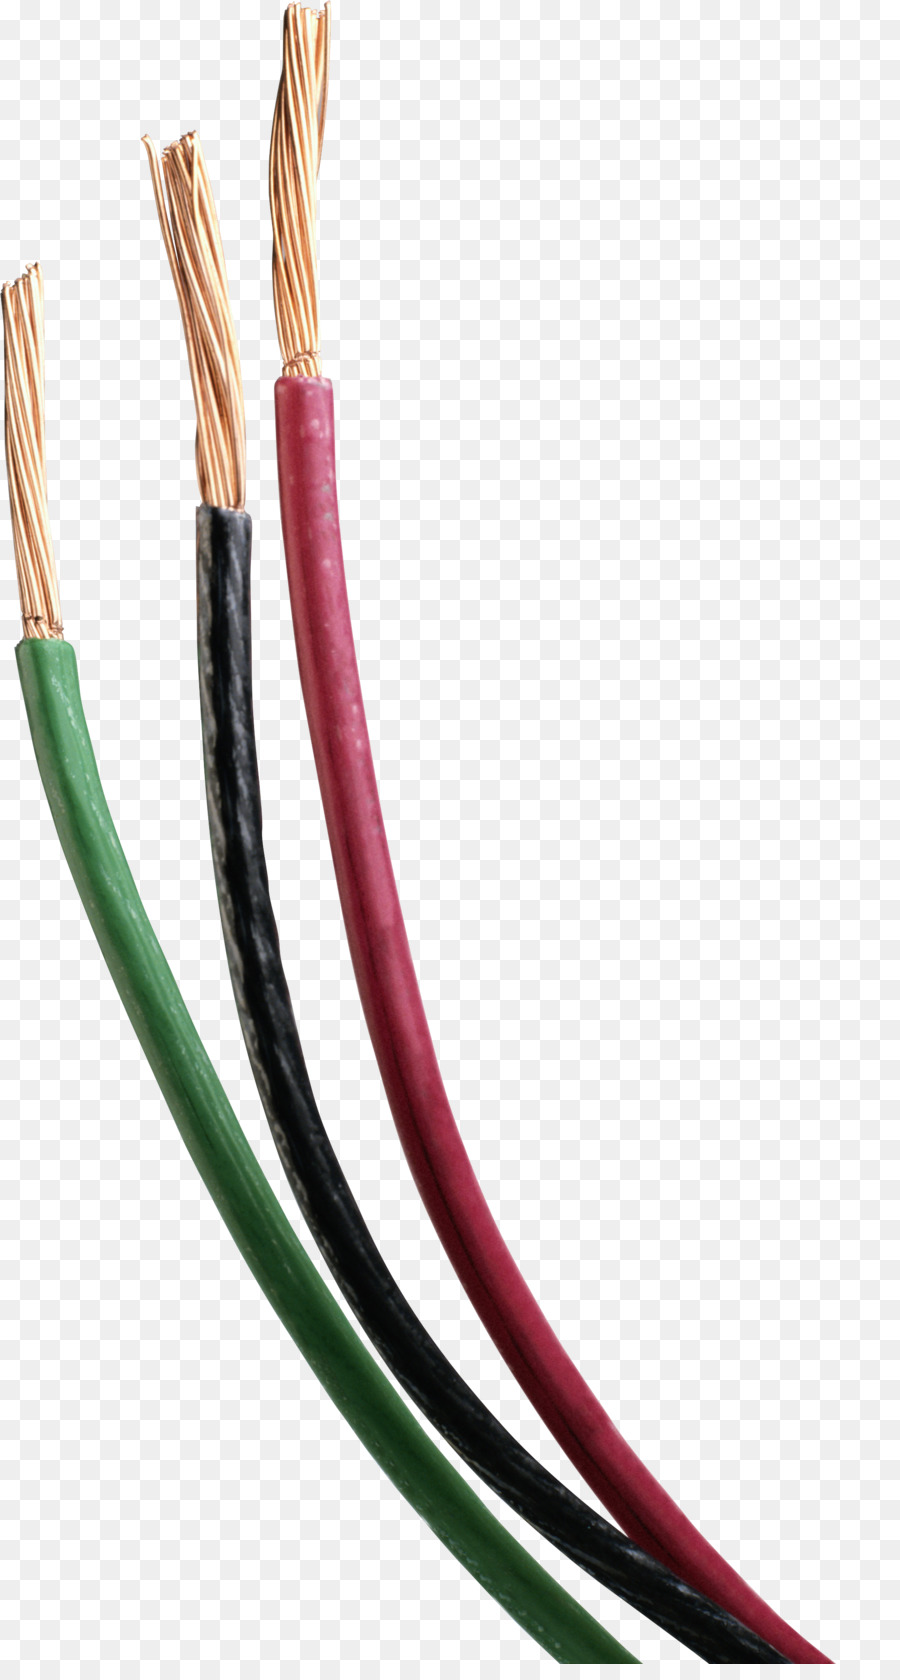 Elektrische Drähte & Kabel, Elektrische Kabel, Clip-art - Steckdose